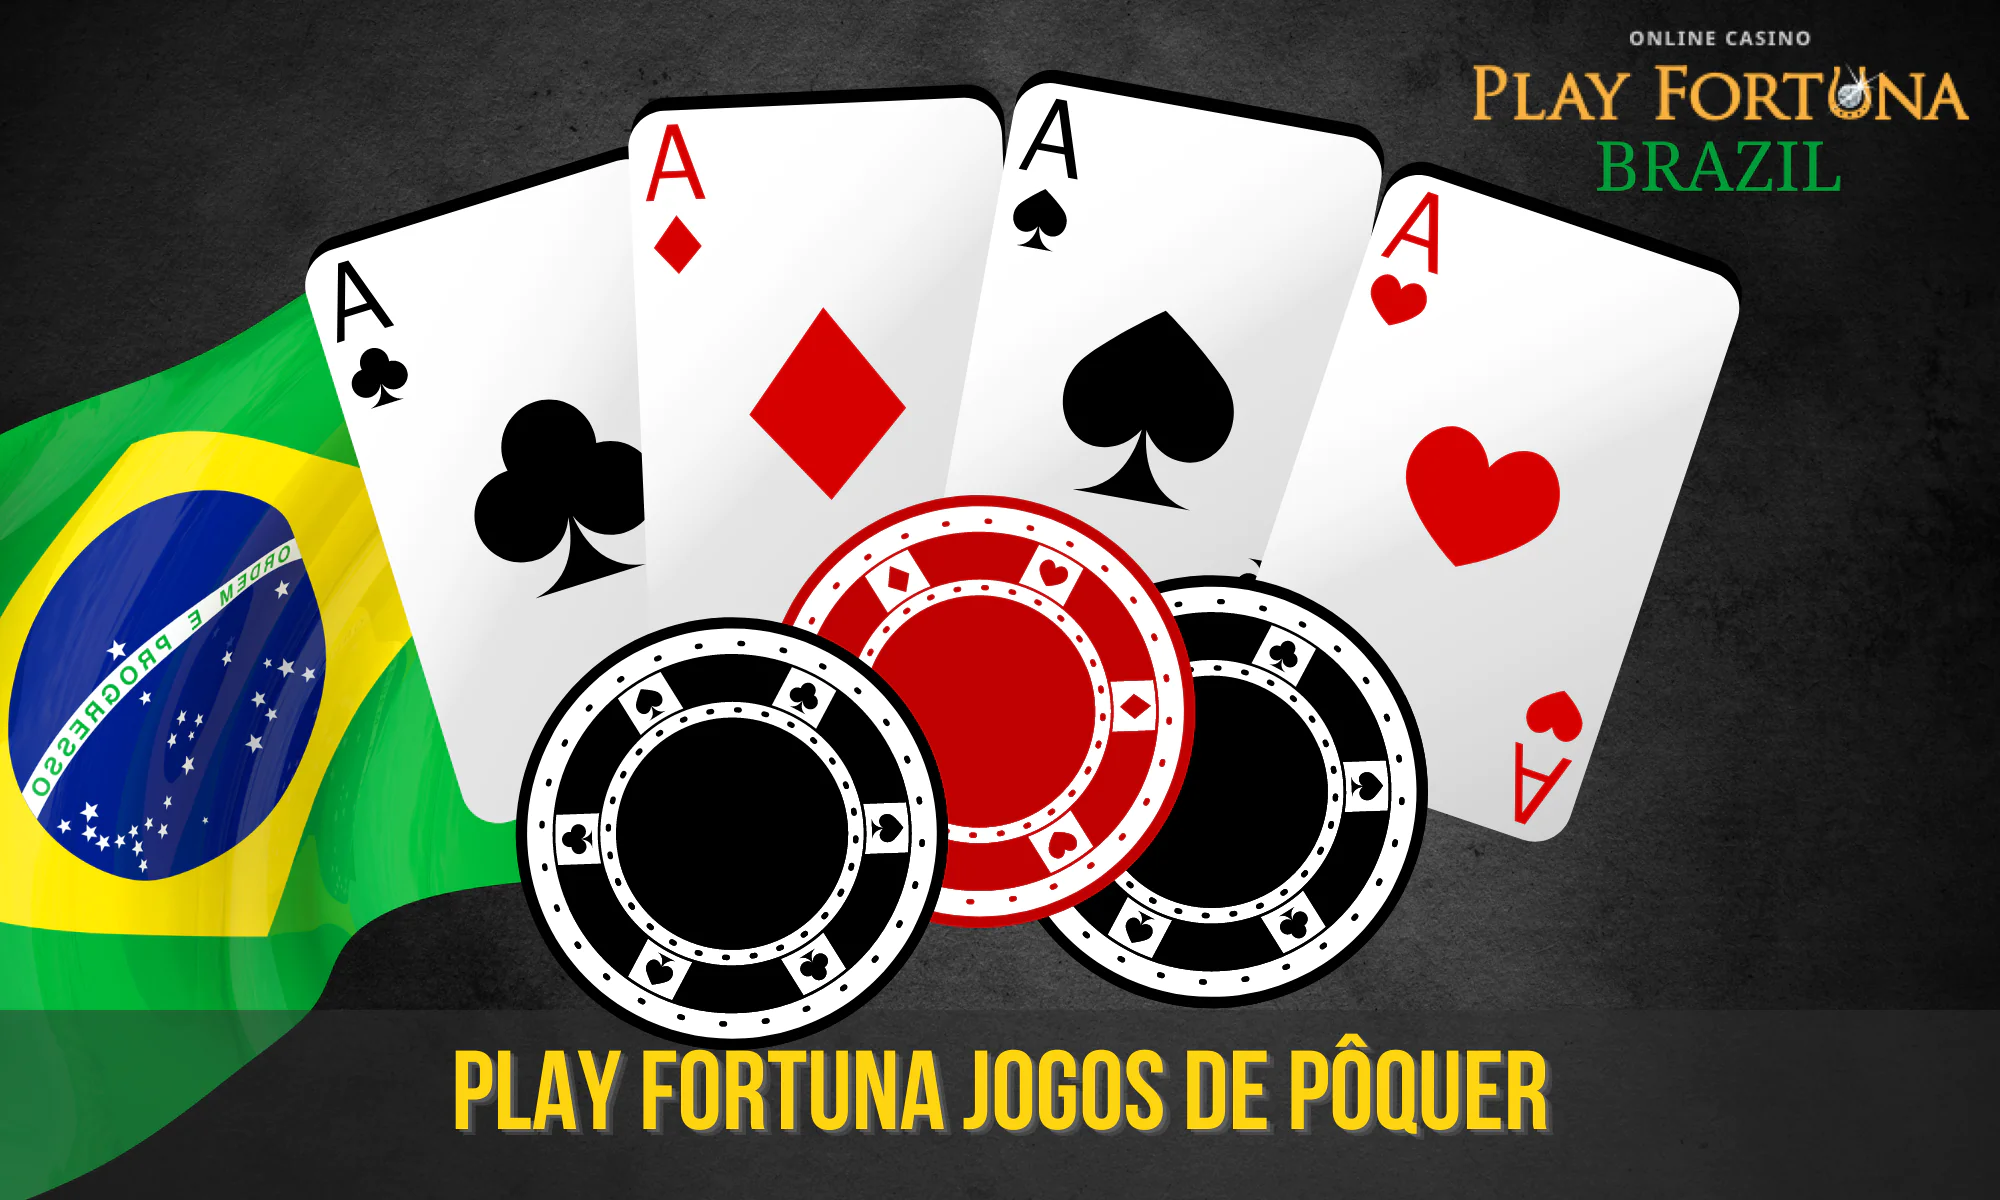 O pôquer Play Fortuna é muito popular entre os jogadores brasileiros